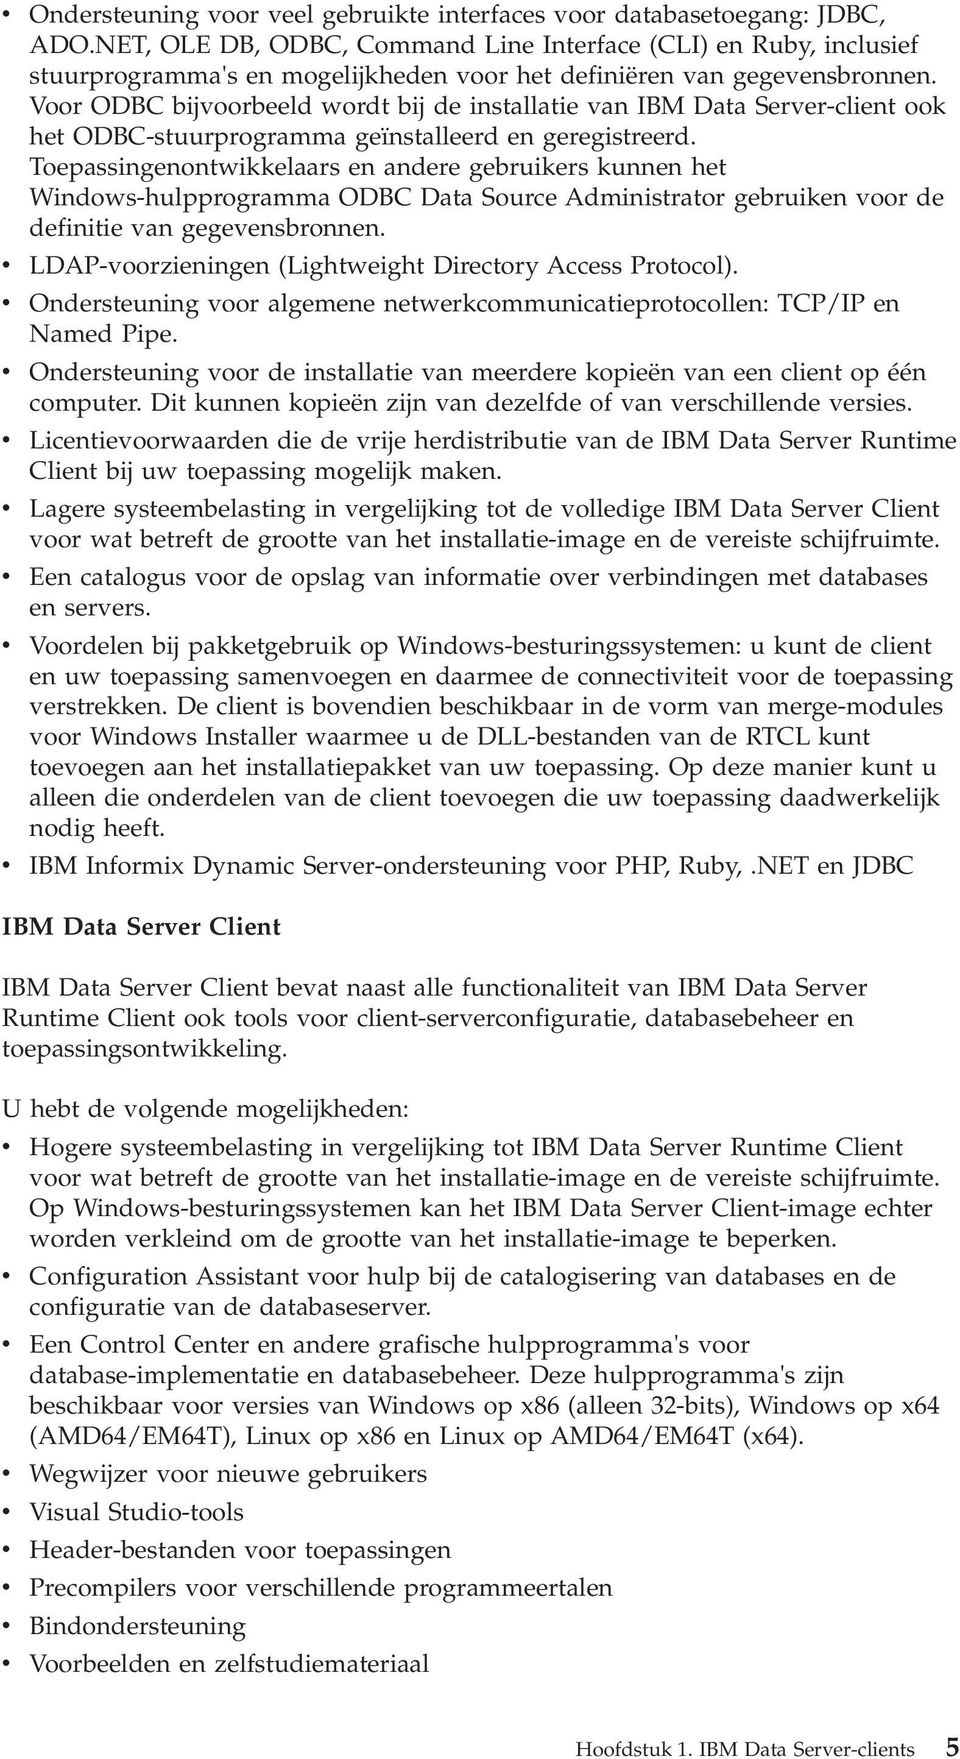 Voor ODBC bijoorbeeld wordt bij de installatie an IBM Data Serer-client ook het ODBC-stuurprogramma geïnstalleerd en geregistreerd.